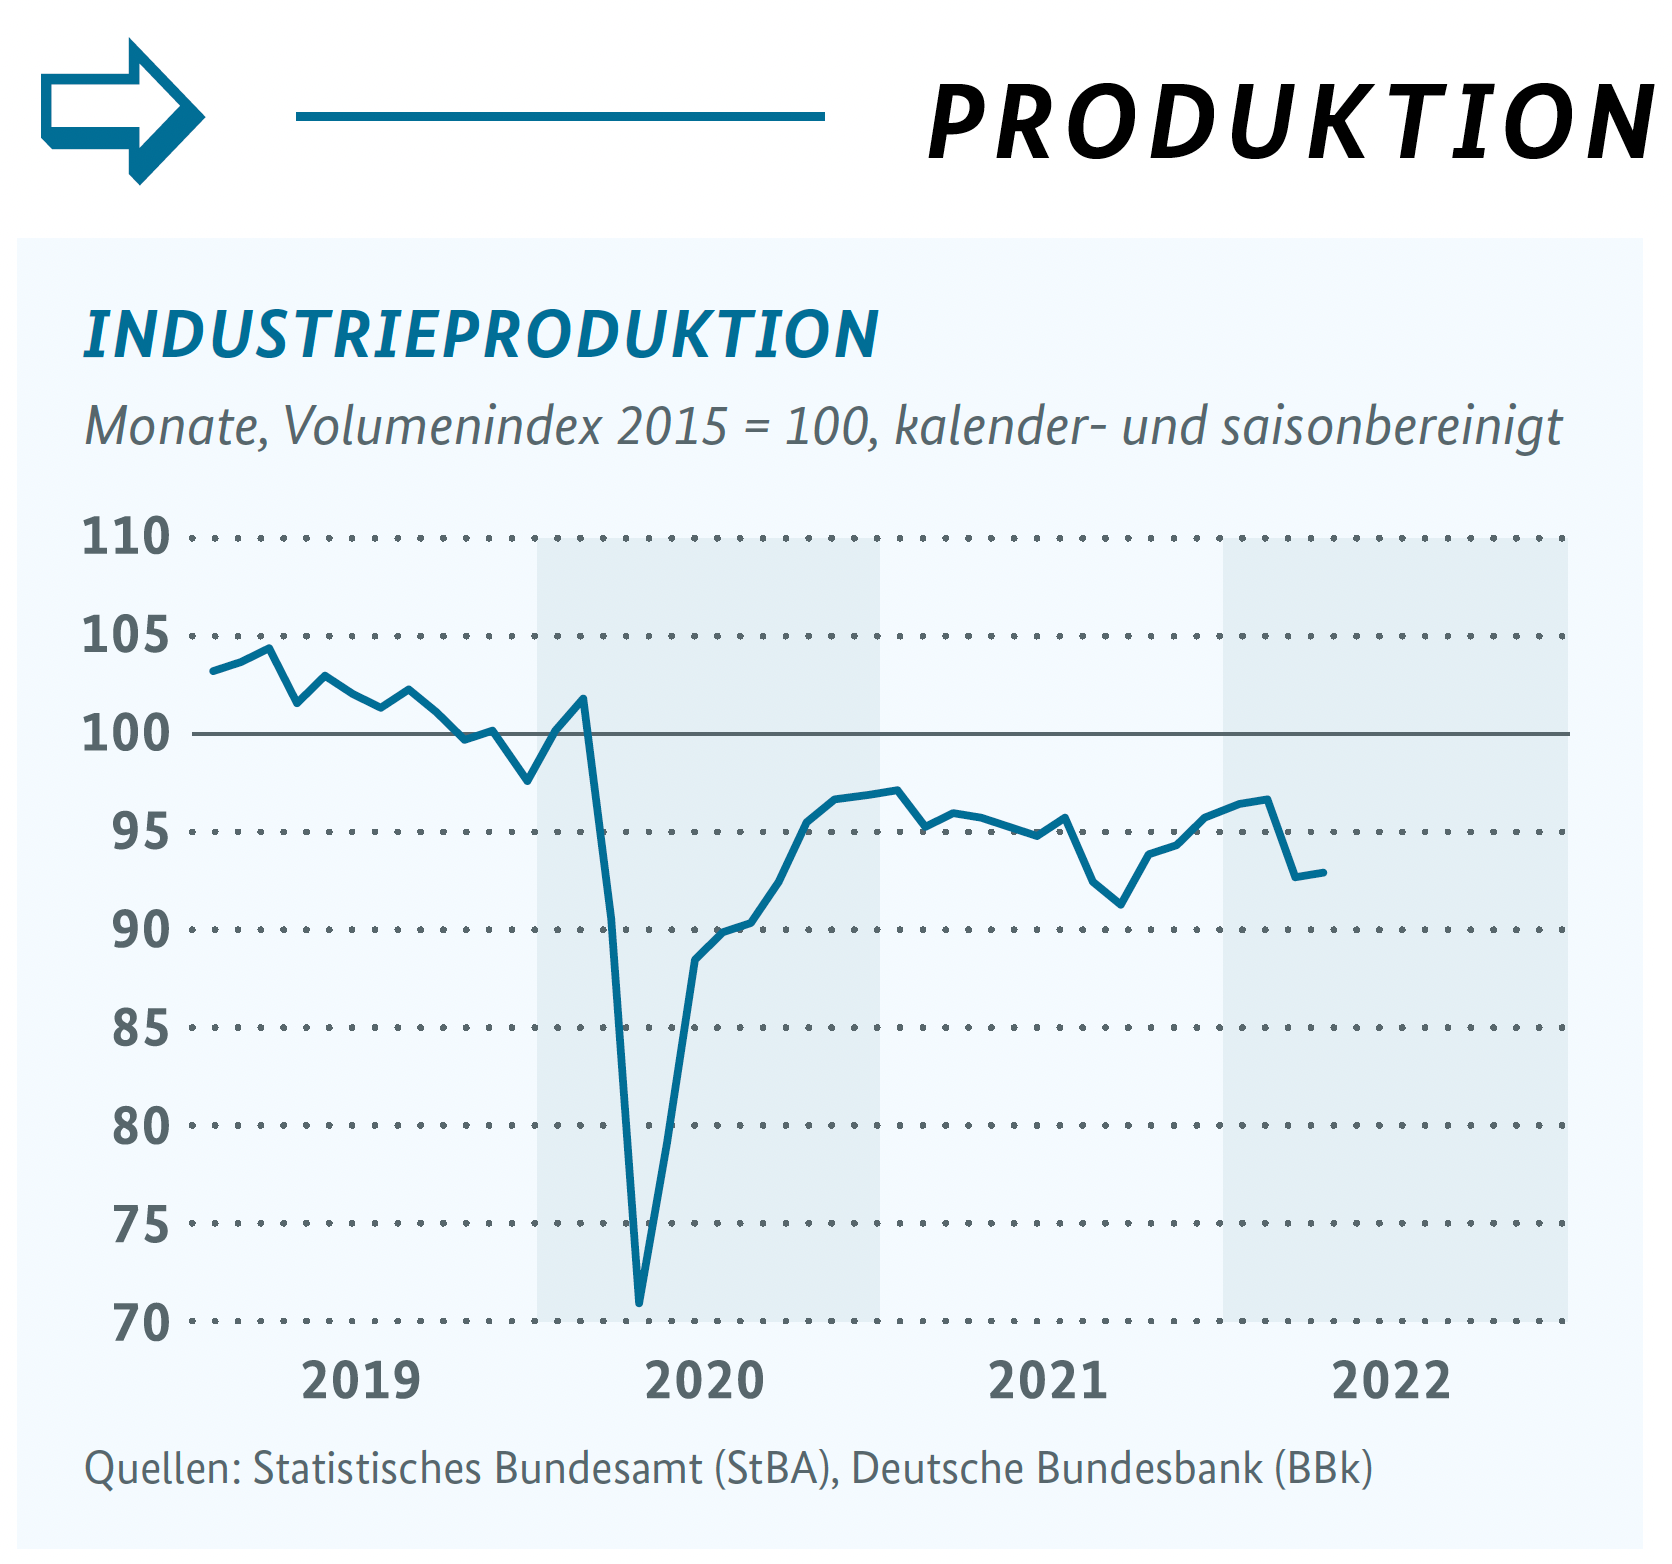 Grafik Konjunkturschlaglicht Produktion